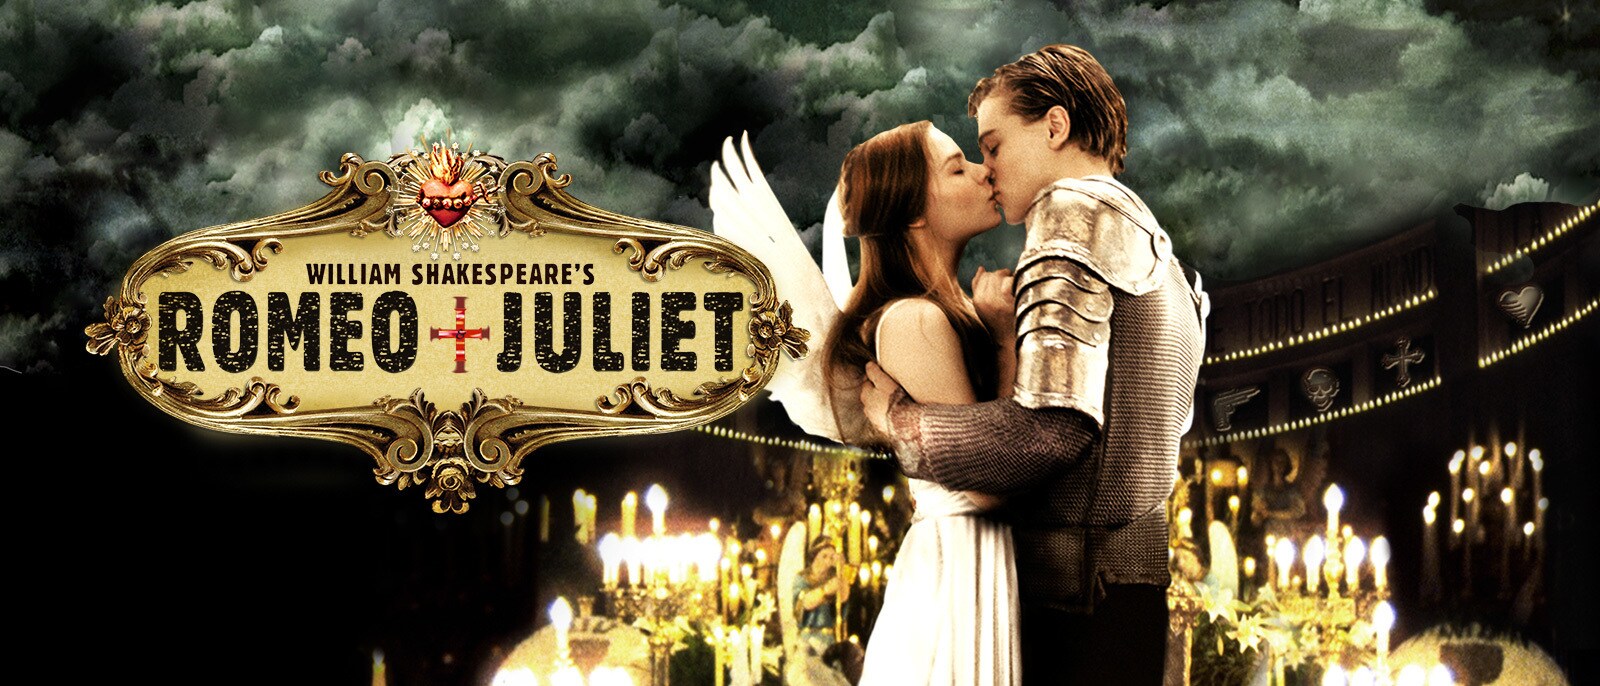 William Shakespeare's Romeo + Juliet Hero